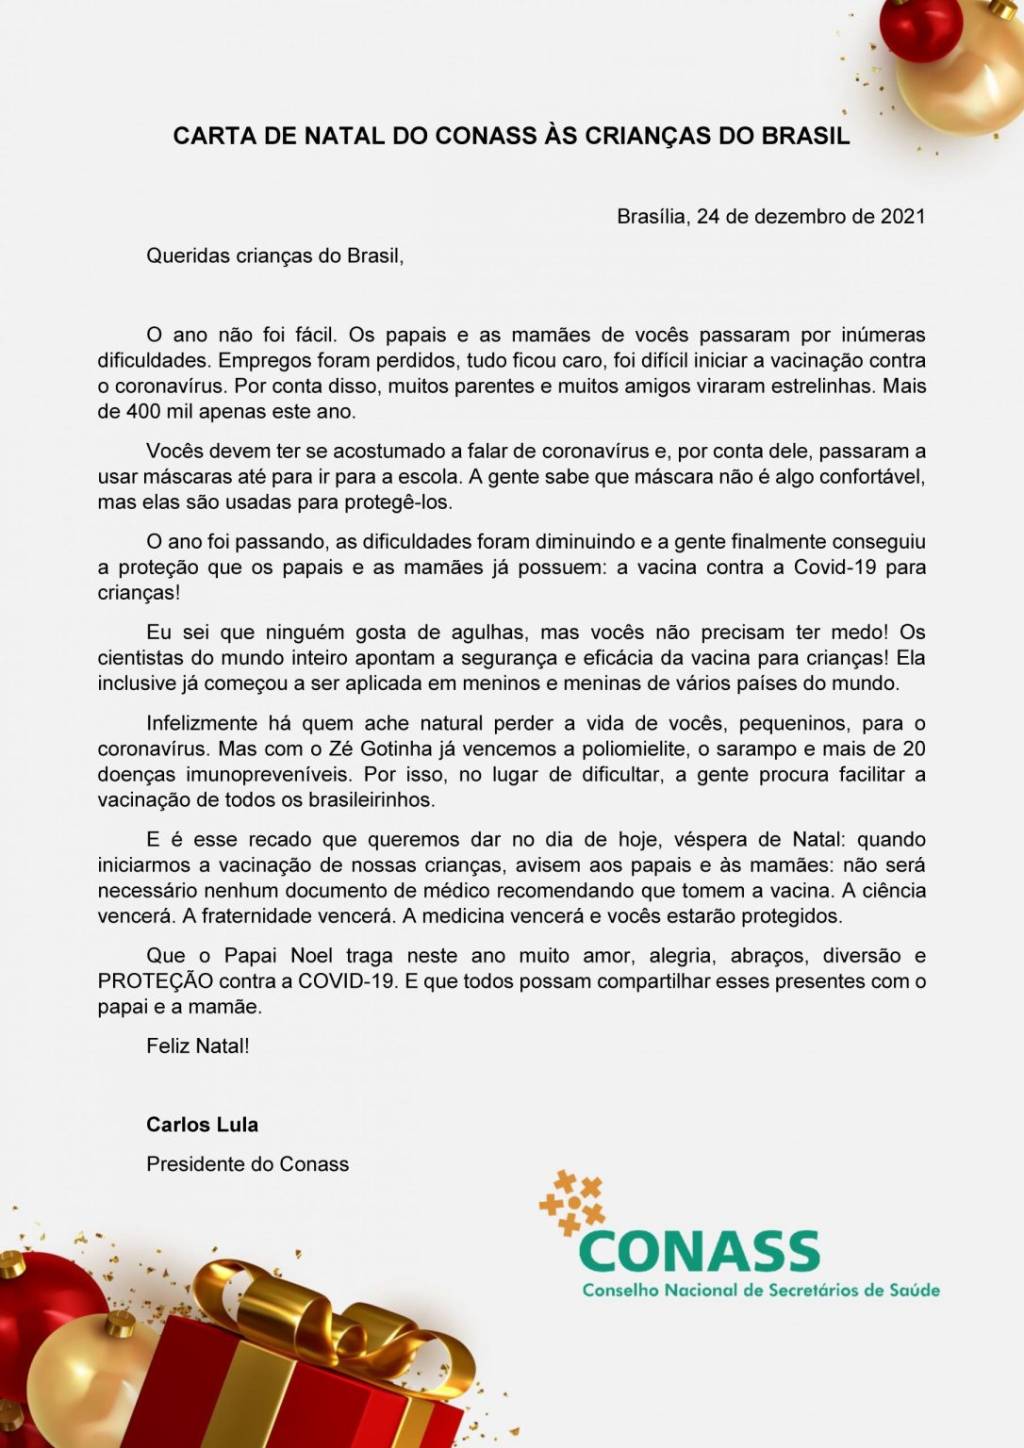 Carta assinada pelo presidente do Conass, Carlos Eduardo de Oliveira Lula, endereçada às crianças -